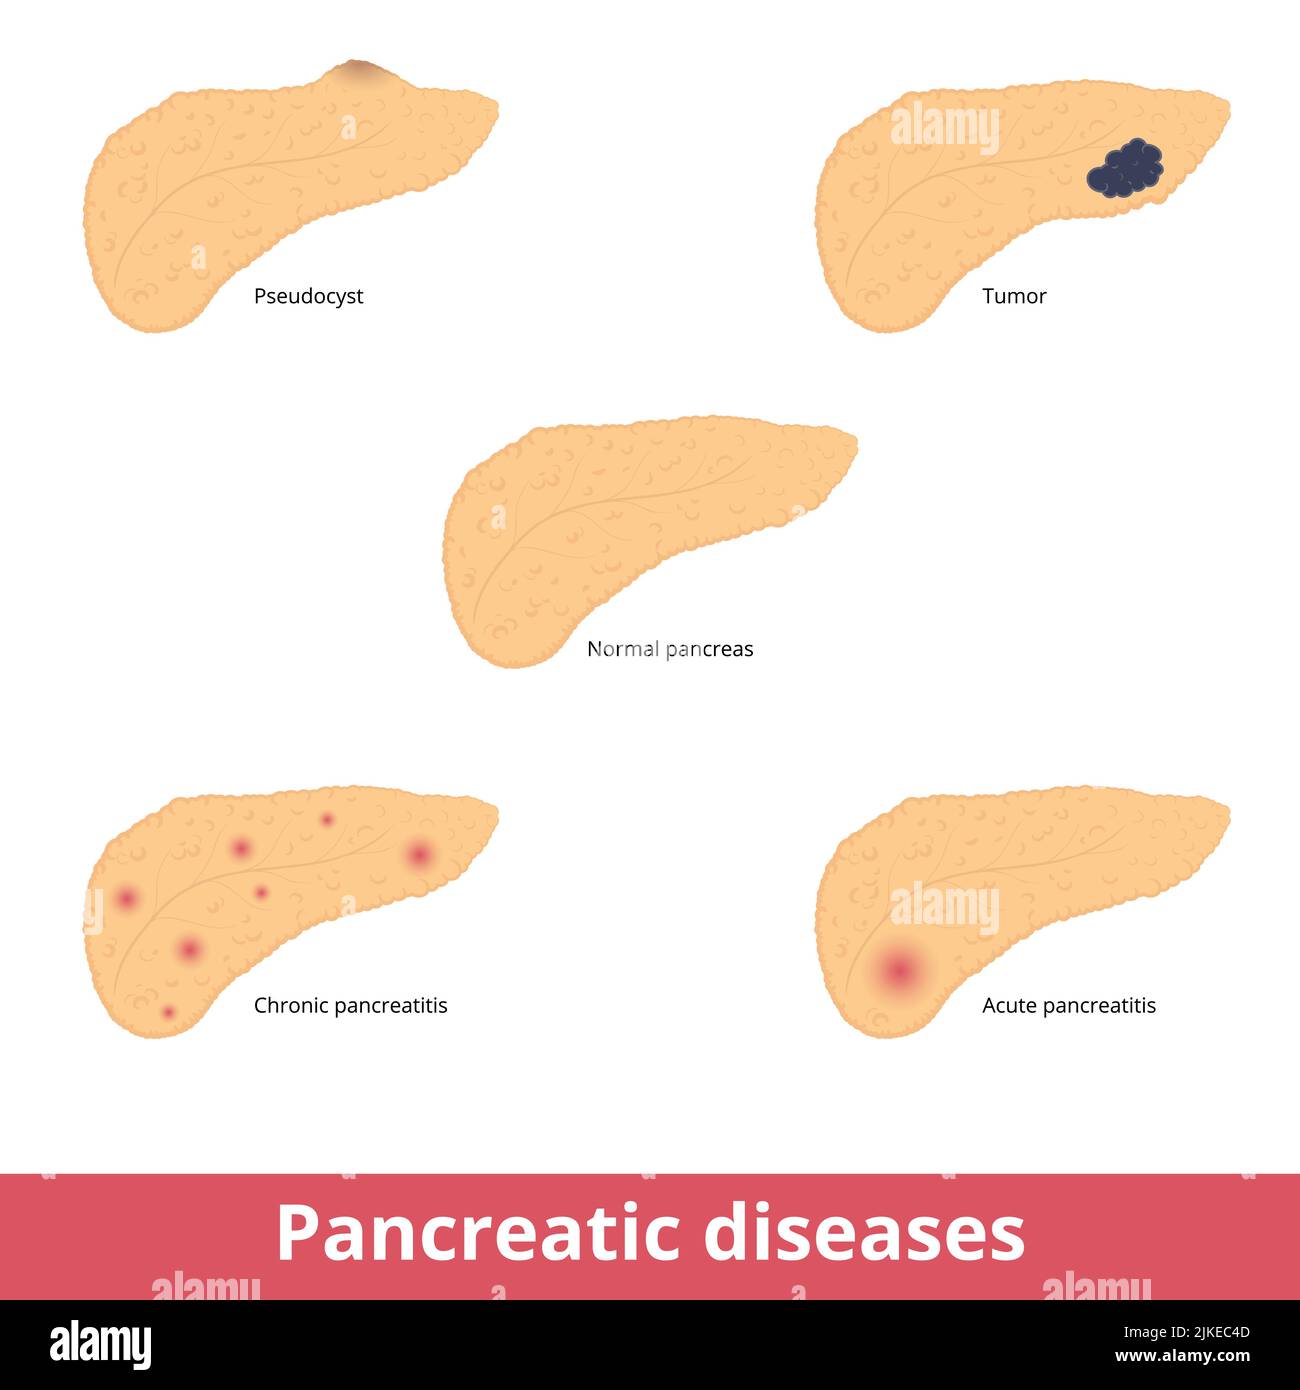 Malattie pancreatiche. Visualizzazione di comuni malattie pancreatiche tra cui pseudocisti, tumori, pancreatite cronica e acuta. Illustrazione Vettoriale